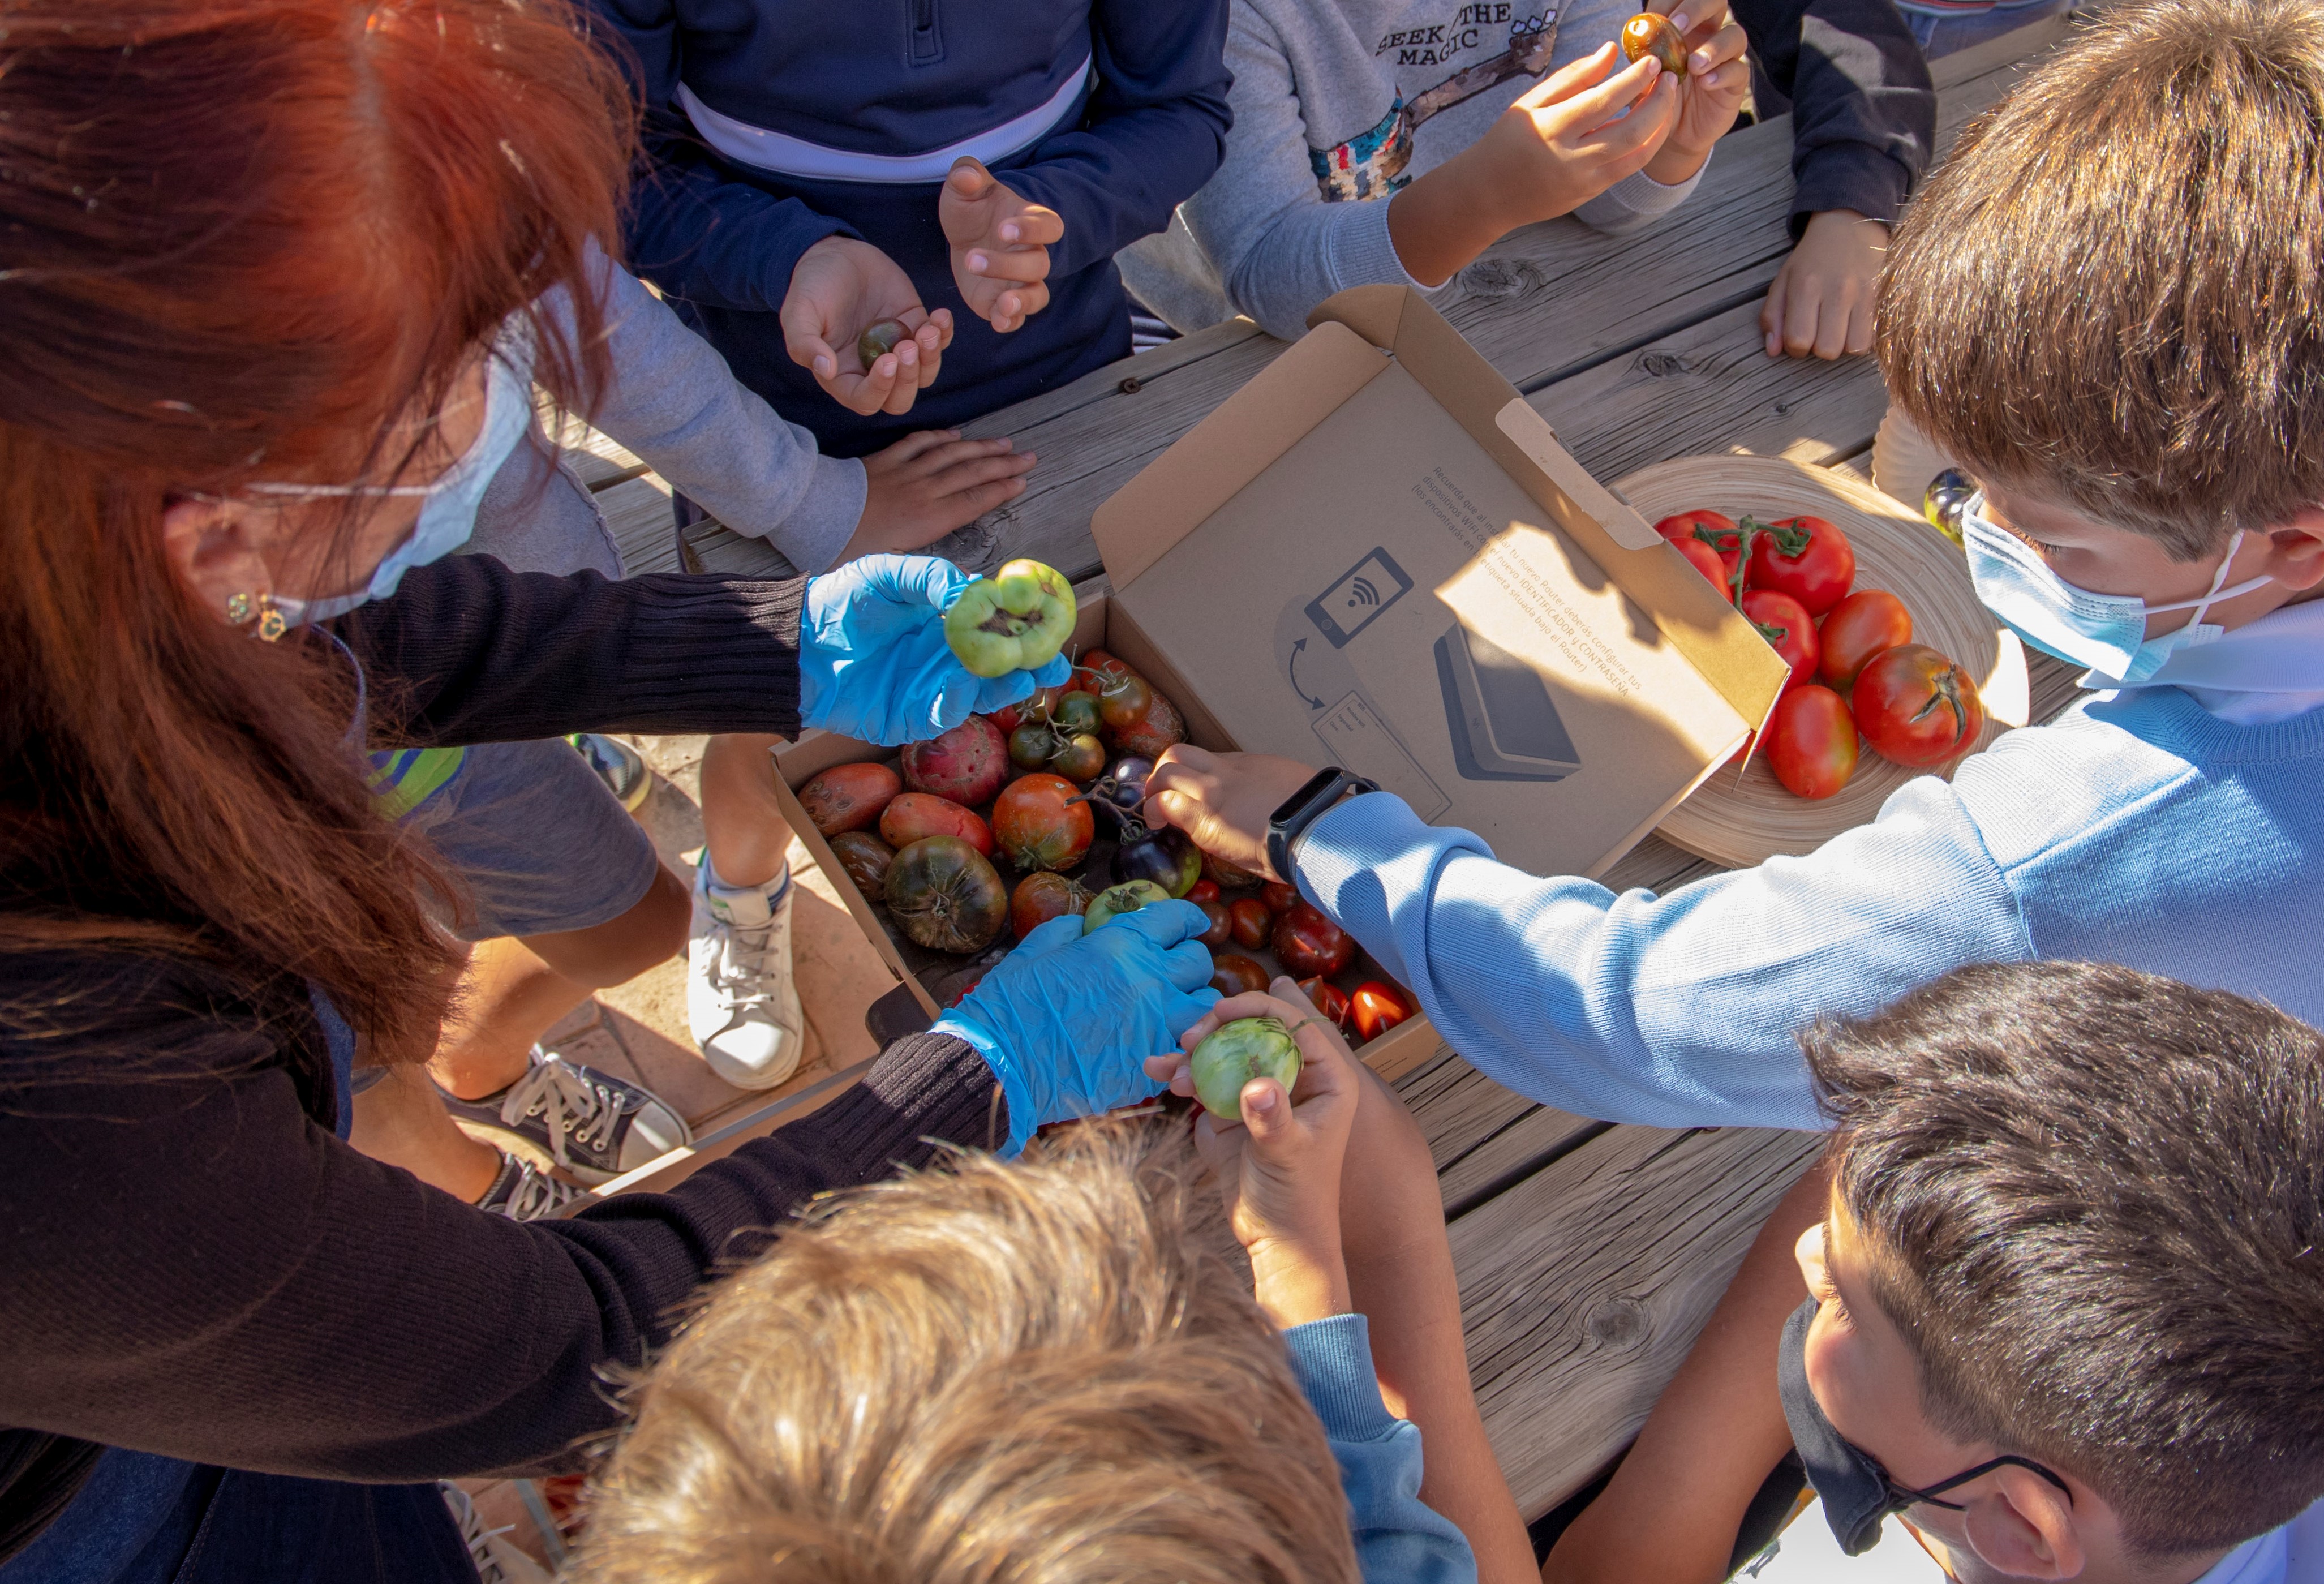 Children tasting tomatoes, Food imaginarium project